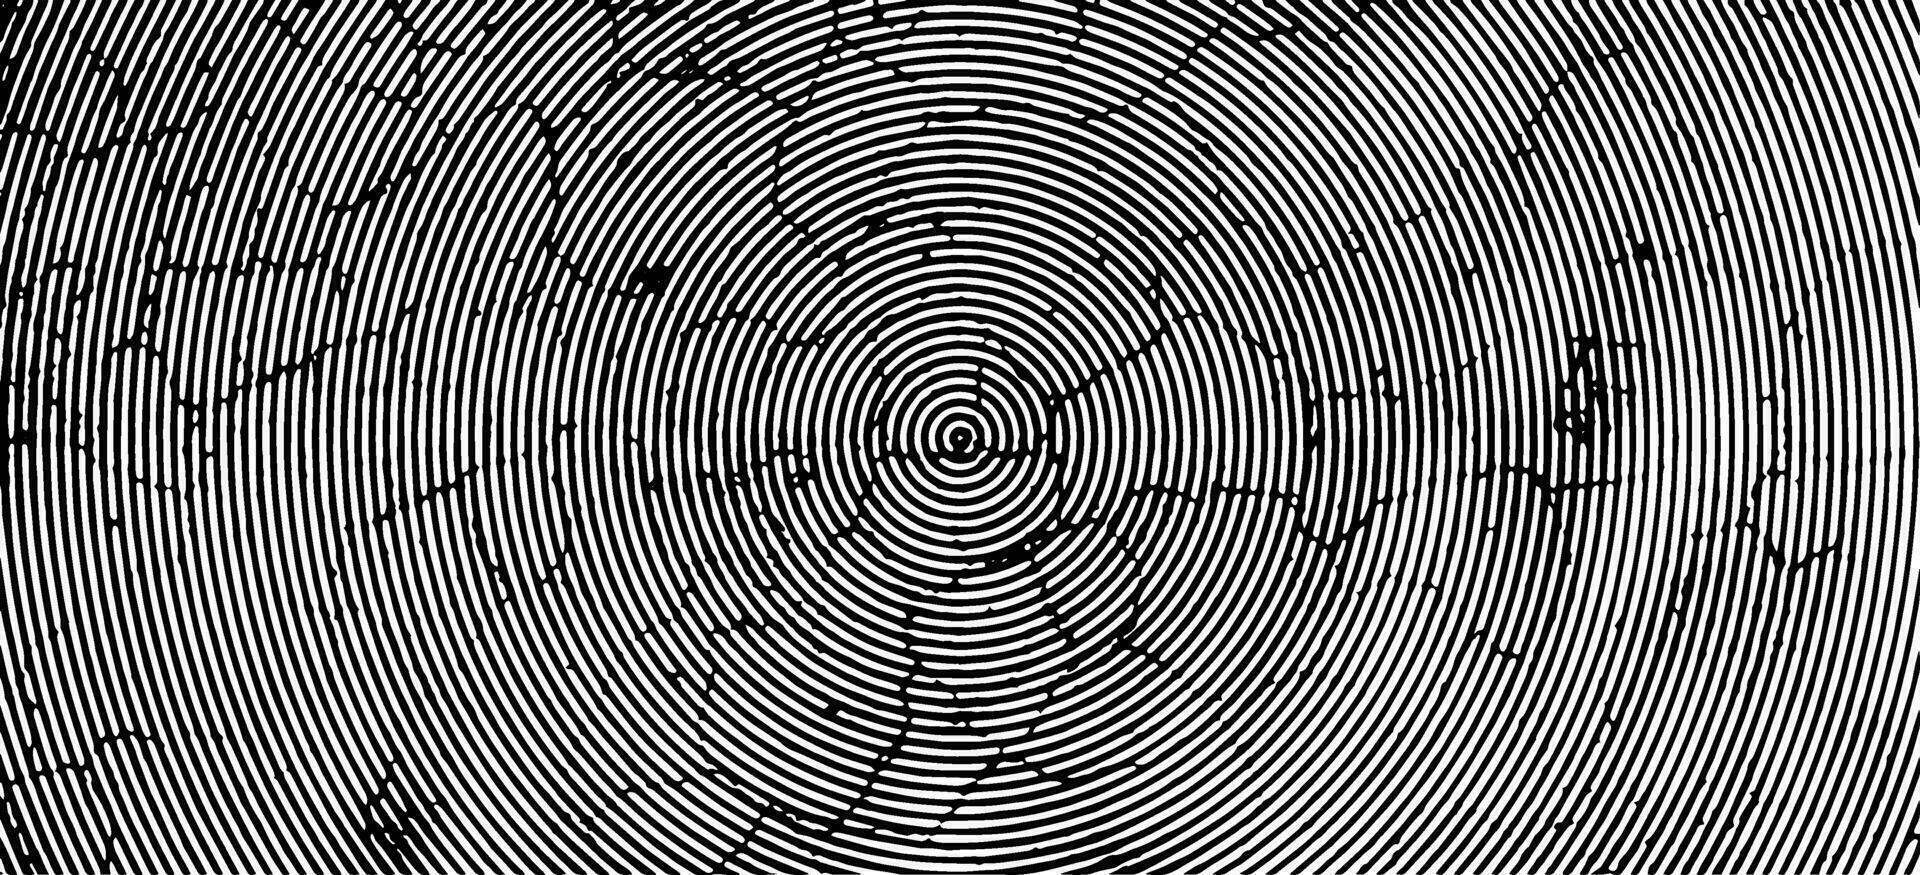 ein schwarz und Weiß Vektor von ein Spiral- Muster, Grunge, überlagern, schmuddelig, sprühen, Grunge Hintergrund, Lärm, gebrochen, dunkel, Wirkung, spritzen, schwarz und Weiss, Jahrgang, schmutzig